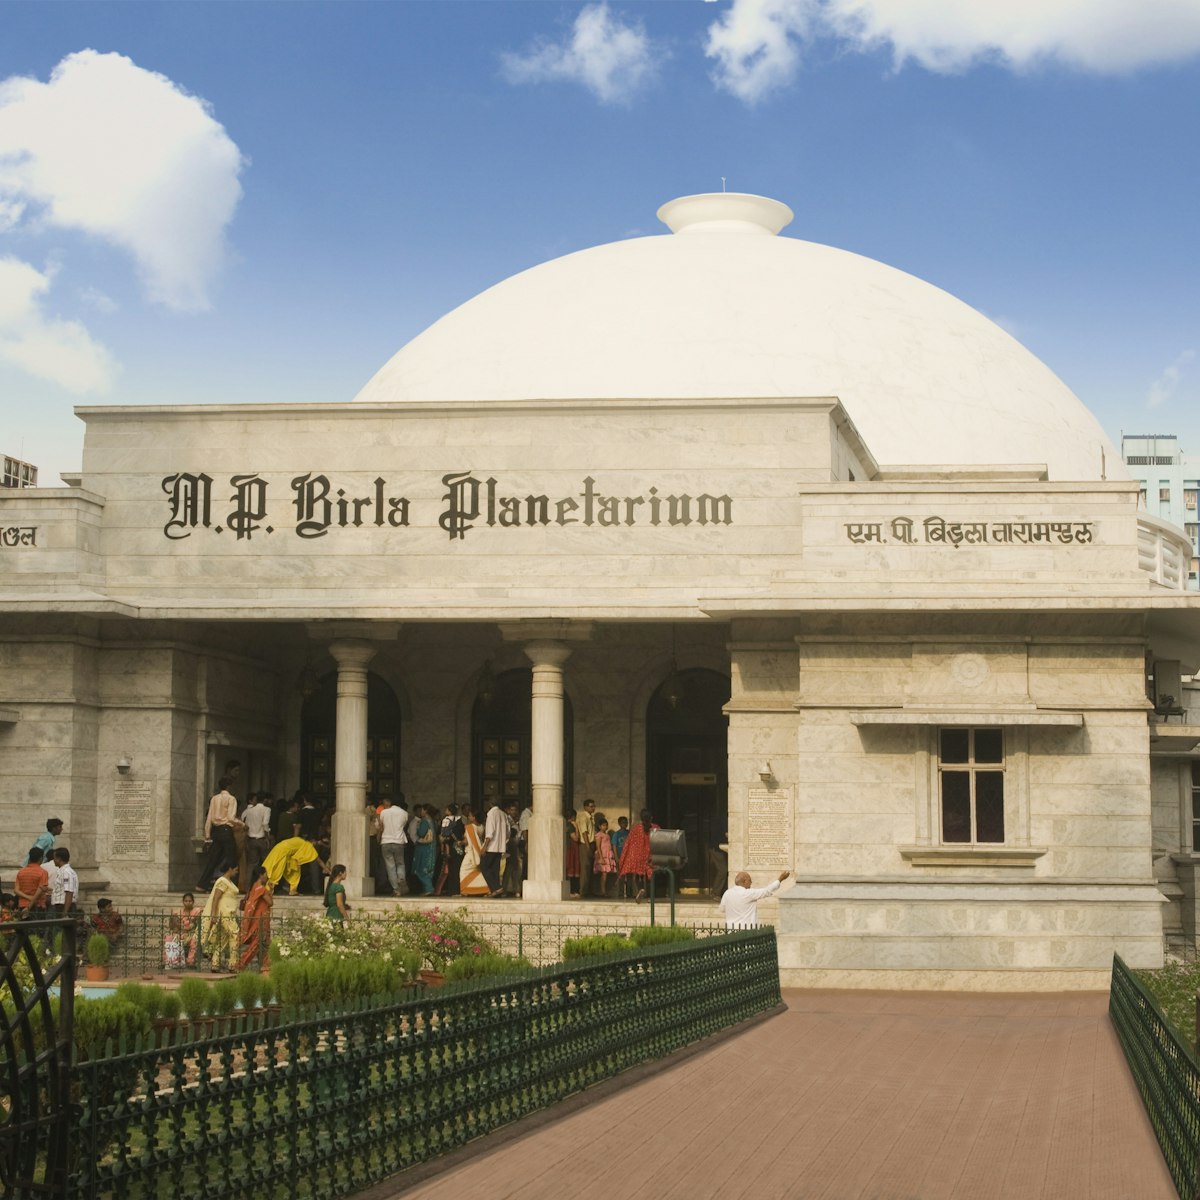 Facade of a Planetarium, B.M. Birla Planetarium, Kolkata, West Bengal, India